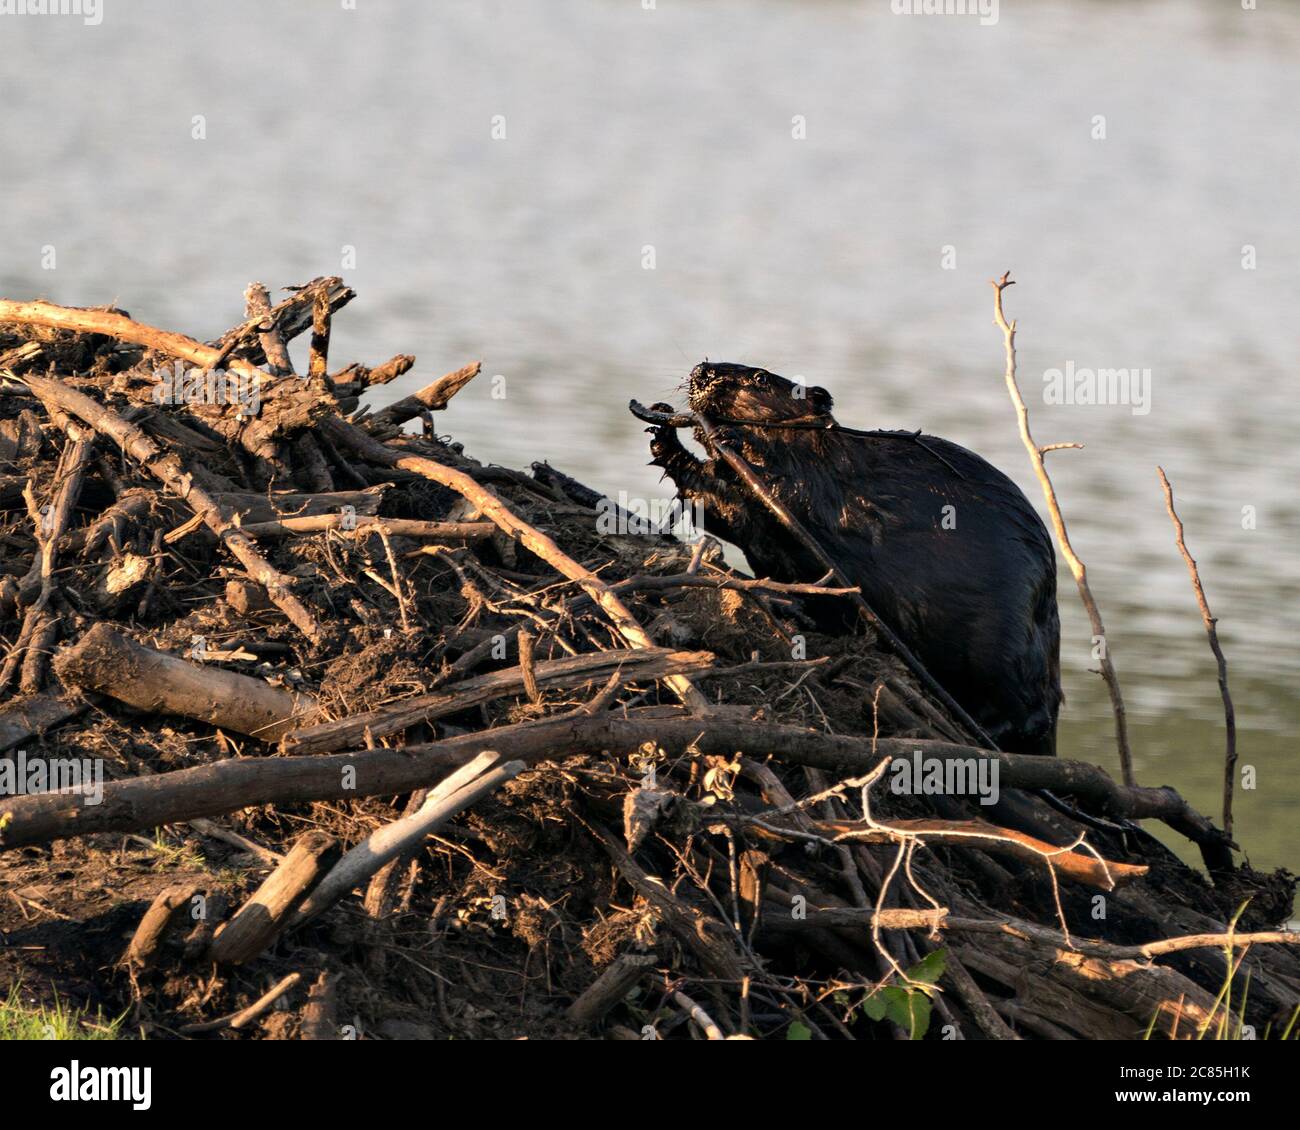 Biber Nahaufnahme Profilansicht Bau einer Biberlodge, zeigt seine braunen Fell, Arbeitsfertigkeit in seinem Lebensraum und Umgebung mit einem Wasser Hintergrund. Stockfoto